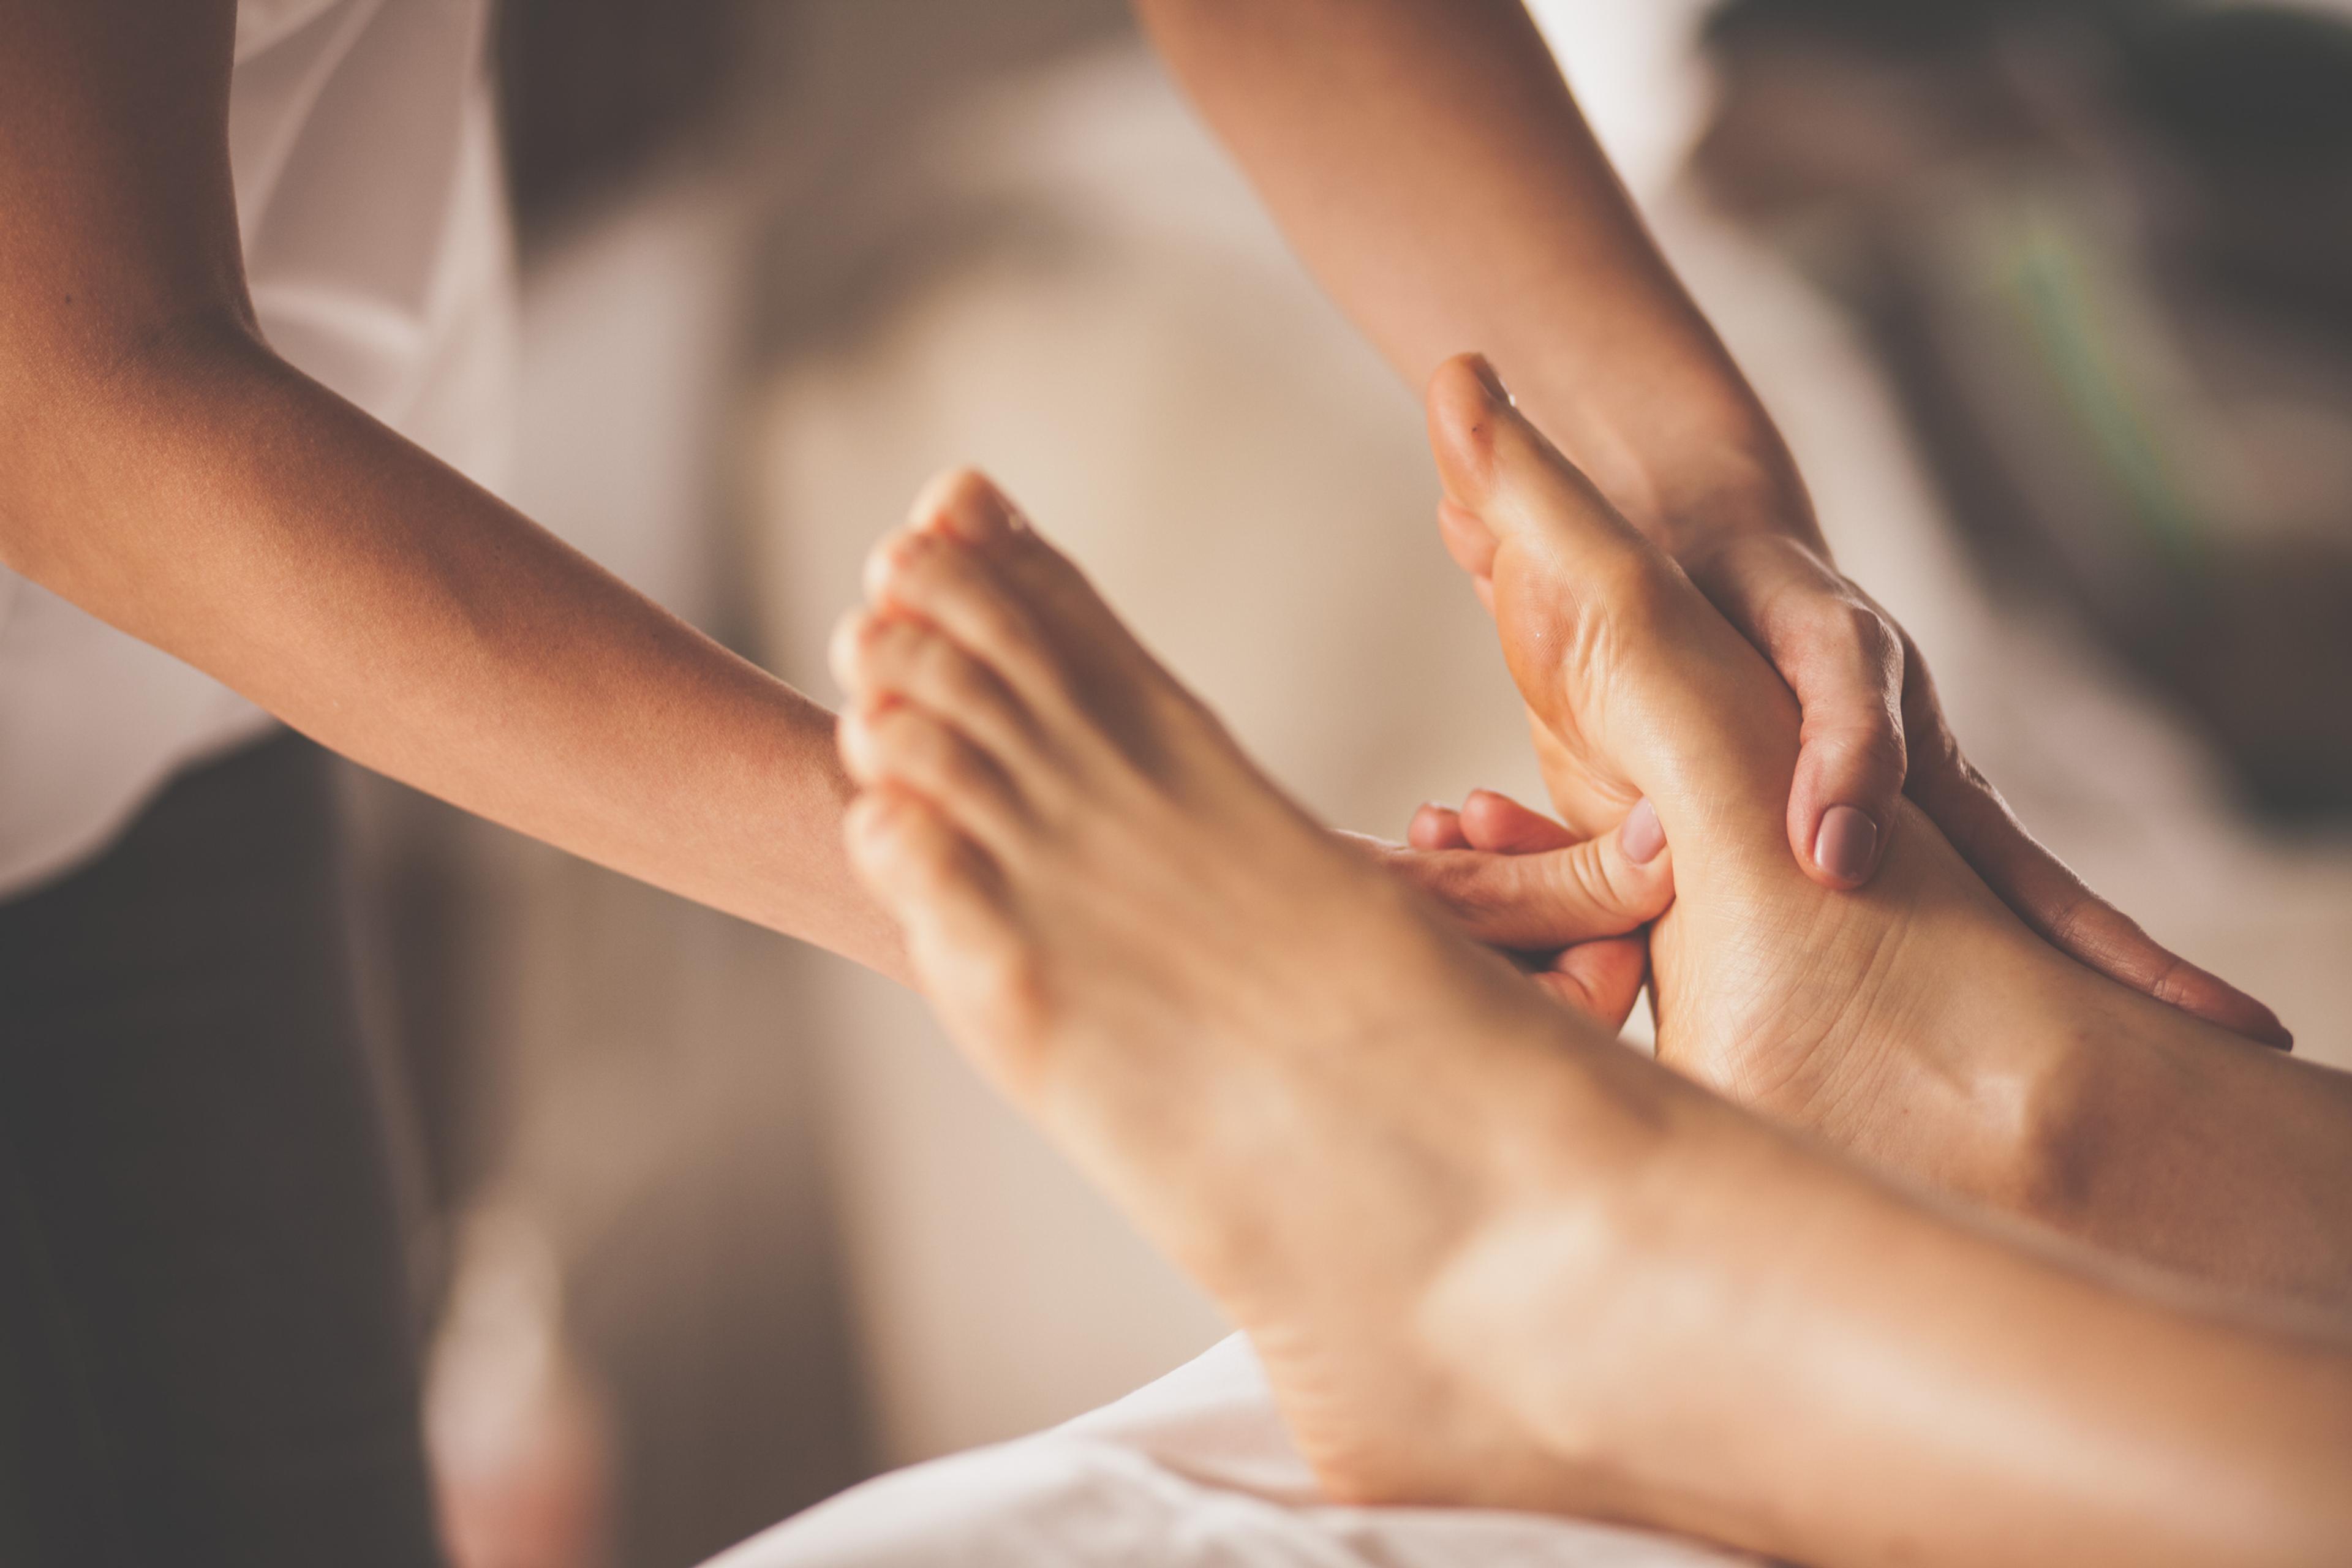 A foot massage